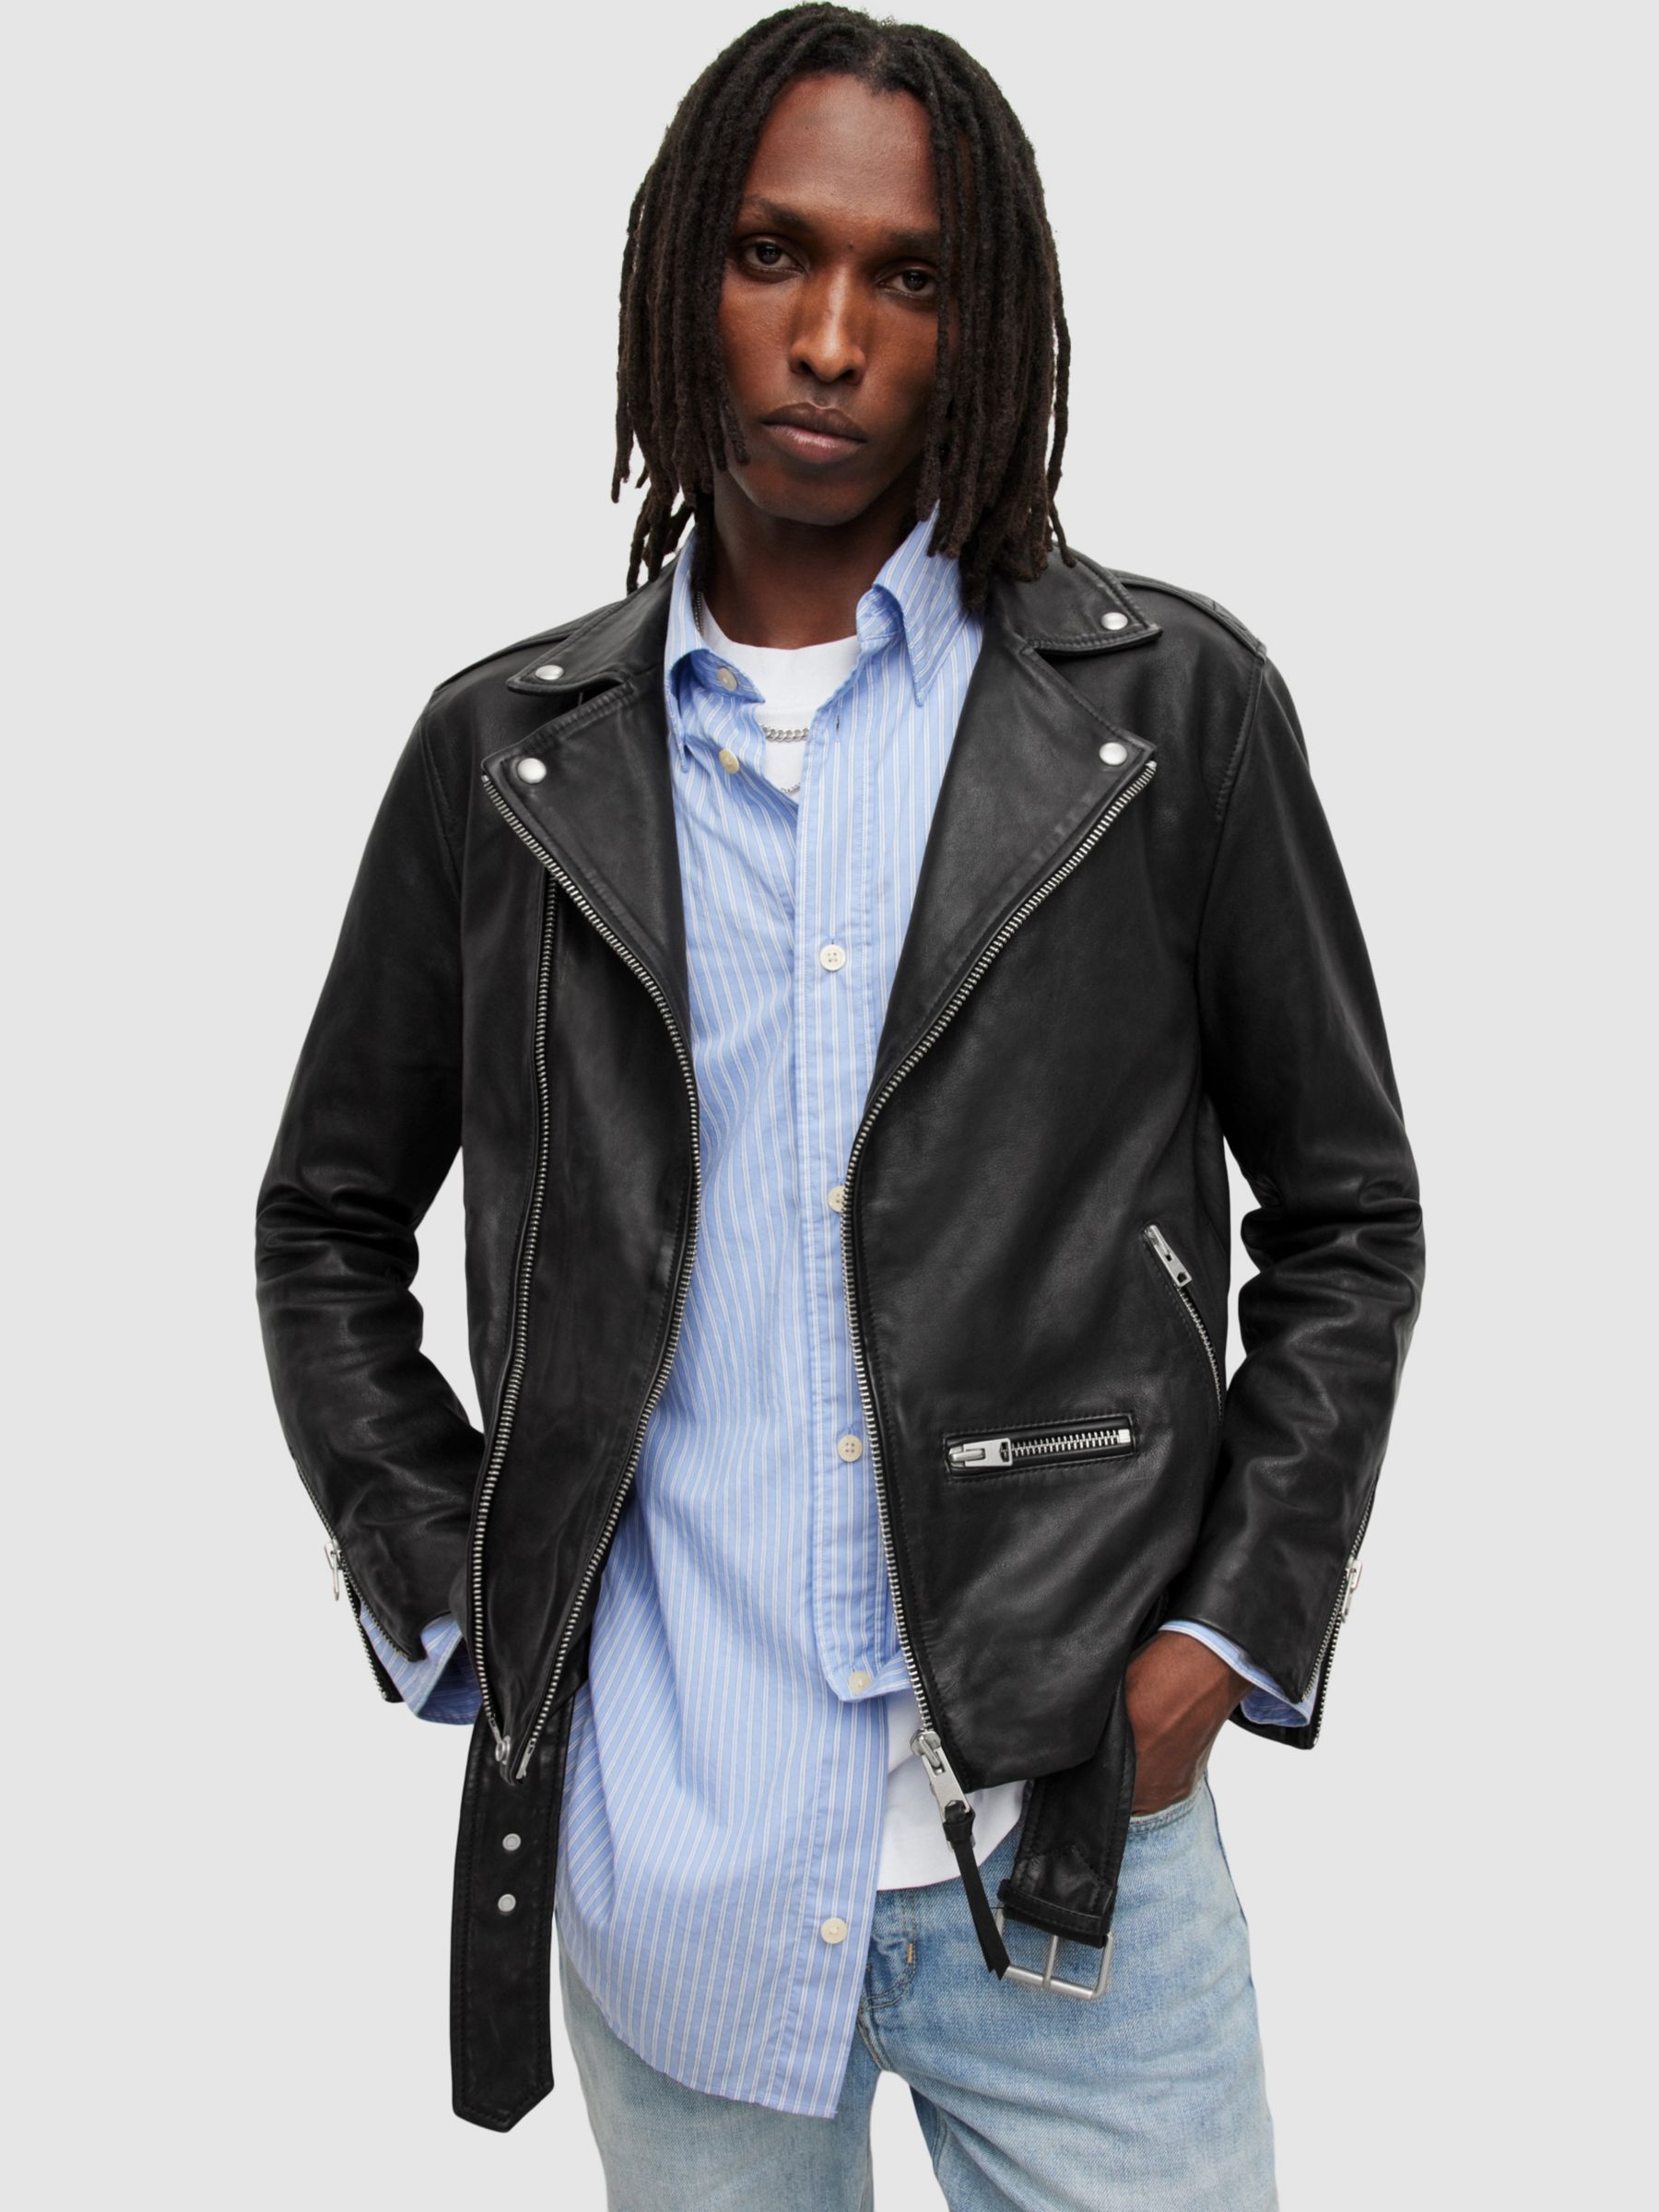 AllSaints Wick Leather Biker Jacket, Black, XS